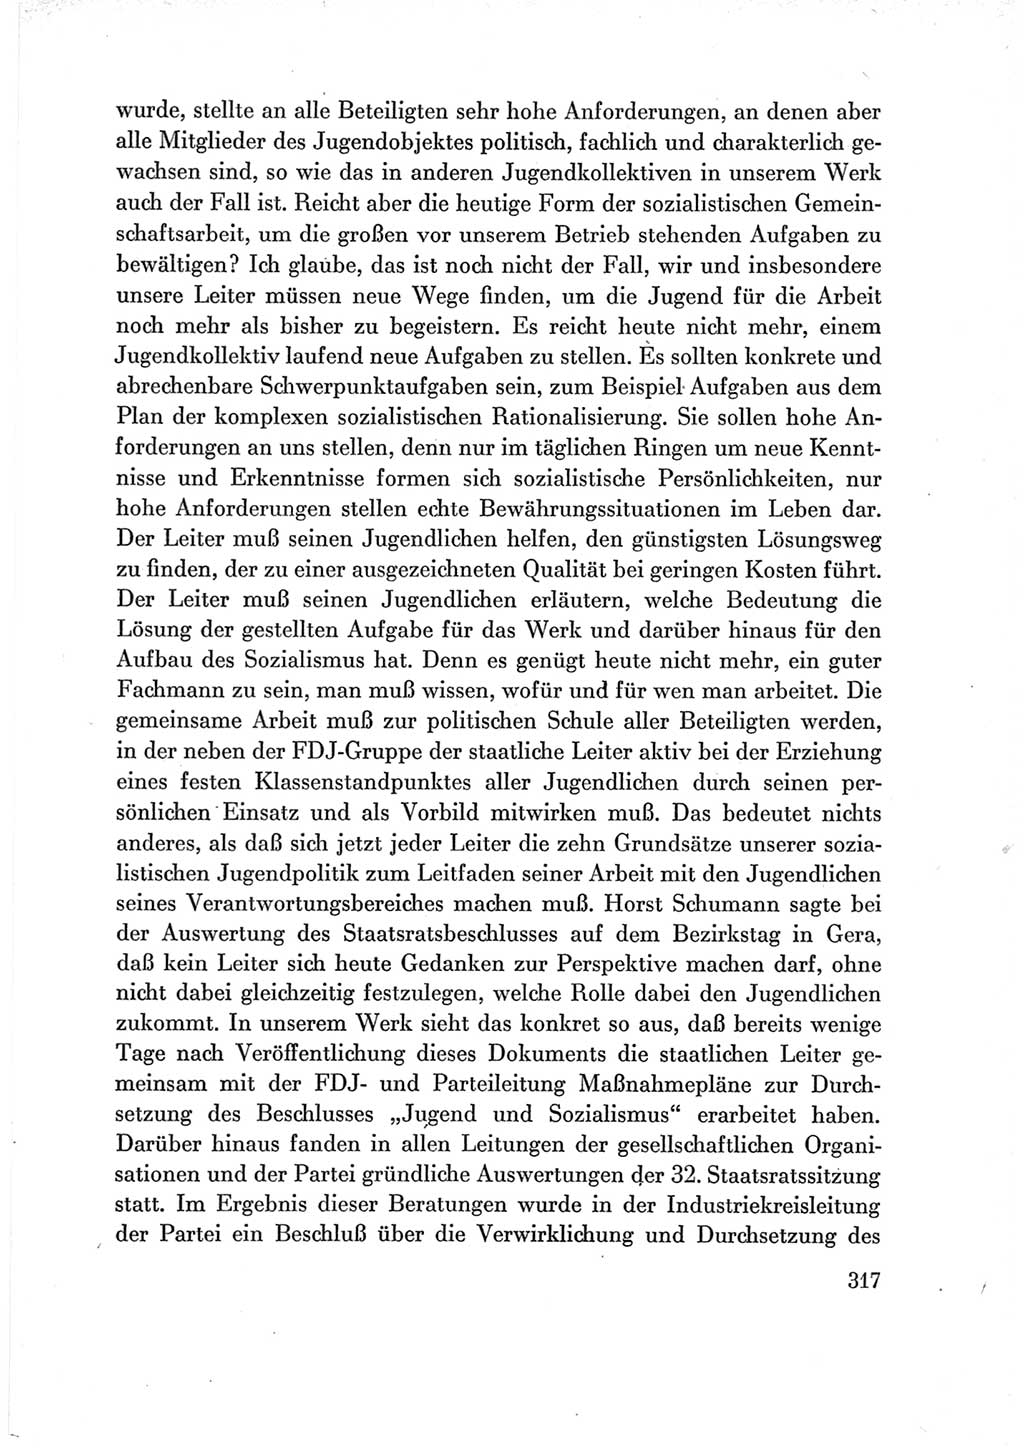 Protokoll der Verhandlungen des Ⅶ. Parteitages der Sozialistischen Einheitspartei Deutschlands (SED) [Deutsche Demokratische Republik (DDR)] 1967, Band Ⅲ, Seite 317 (Prot. Verh. Ⅶ. PT SED DDR 1967, Bd. Ⅲ, S. 317)